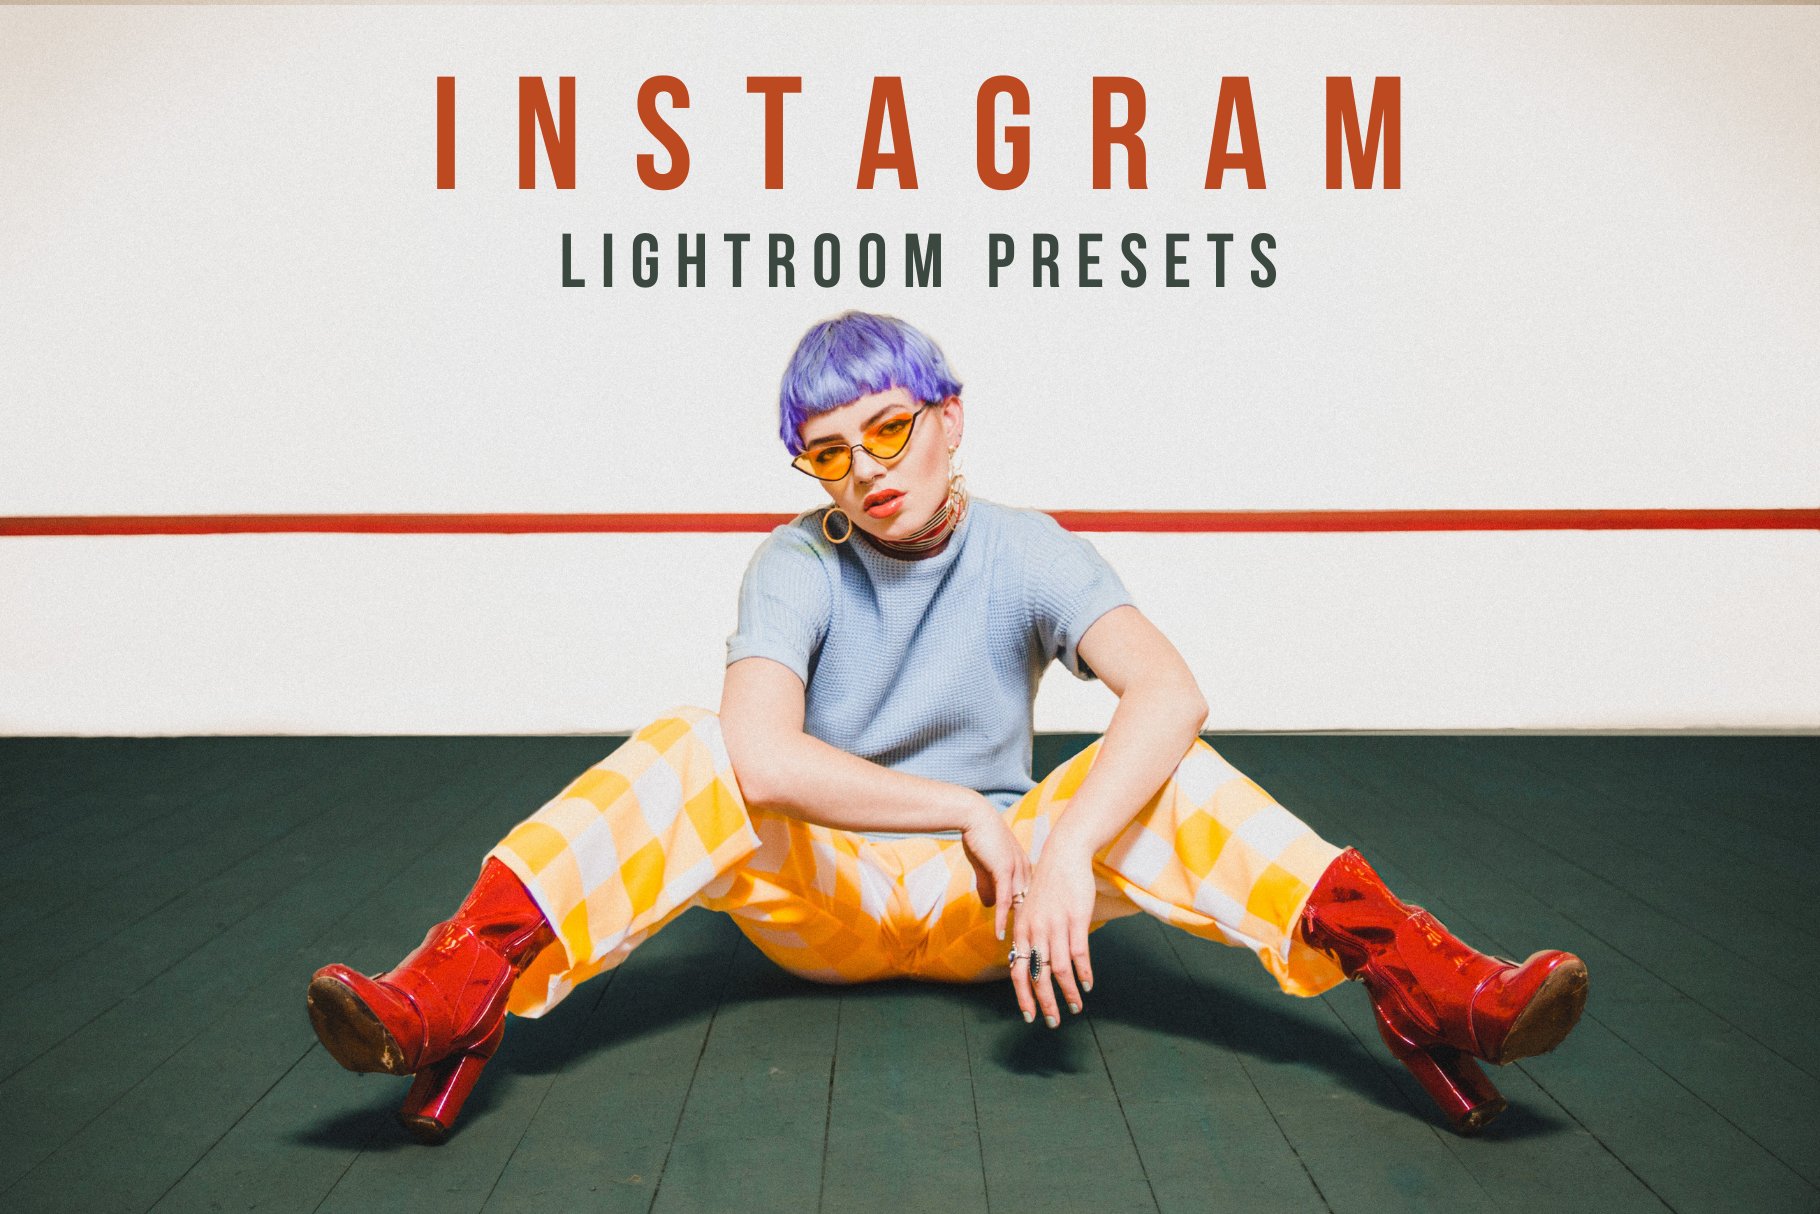 Instagram Lightroom Presetscover image.